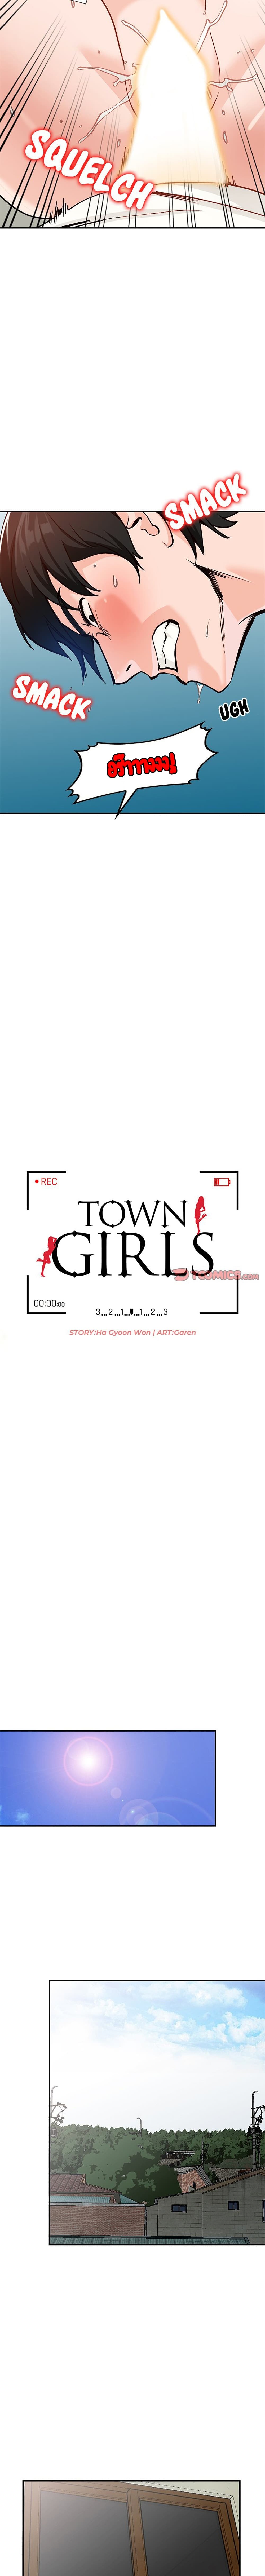 Town Girls 26 02